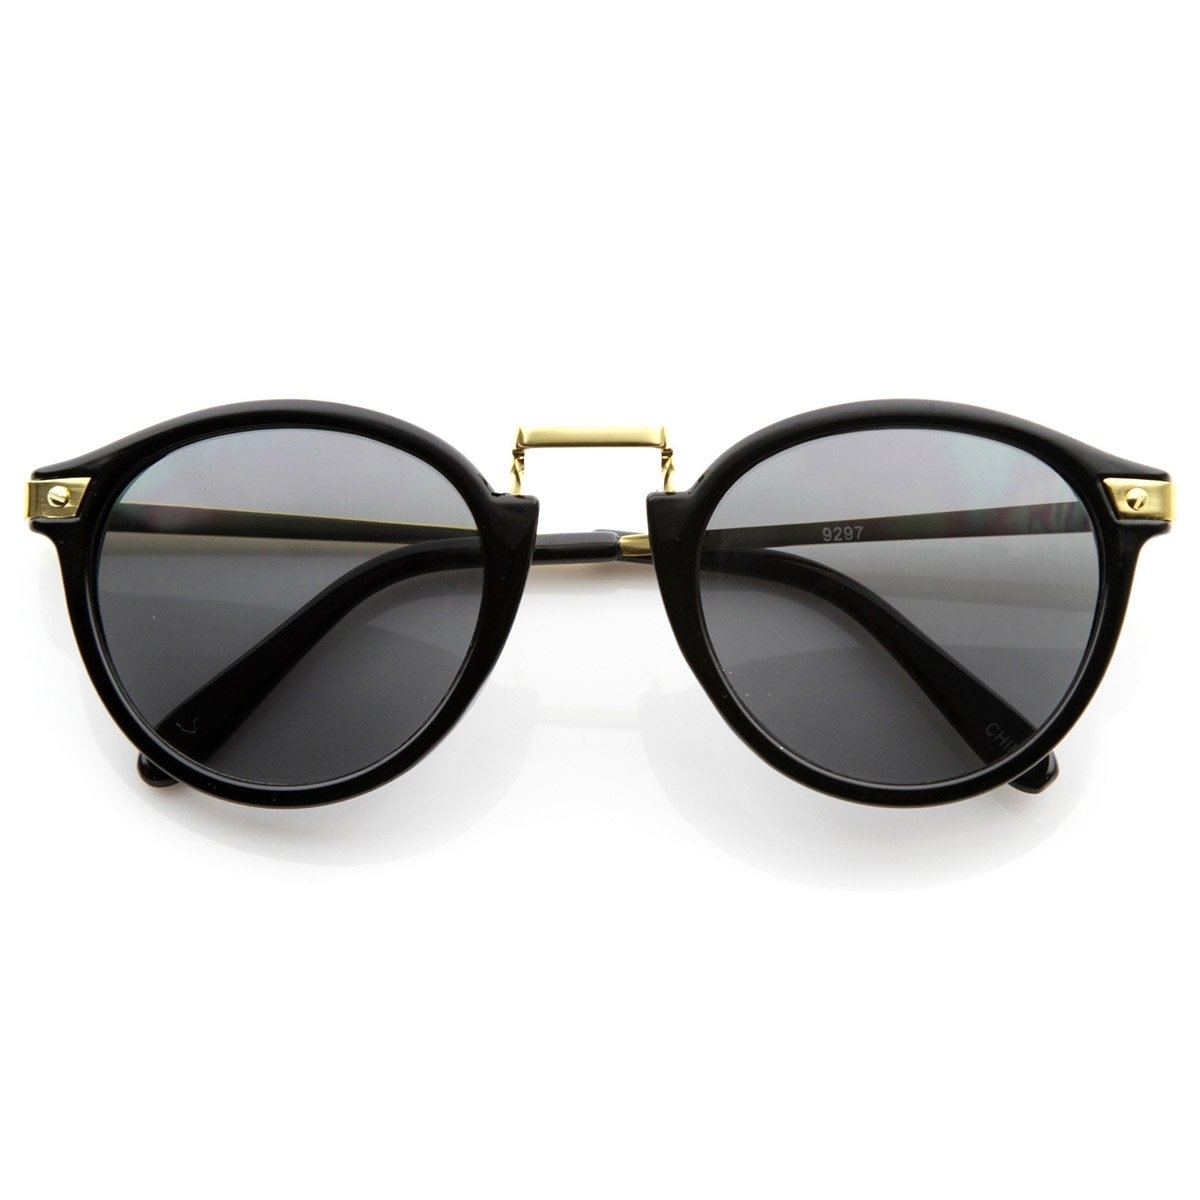 Vintage Inspired Round Horned Rim P-3 Frame Retro Sunglasses - Havana Green